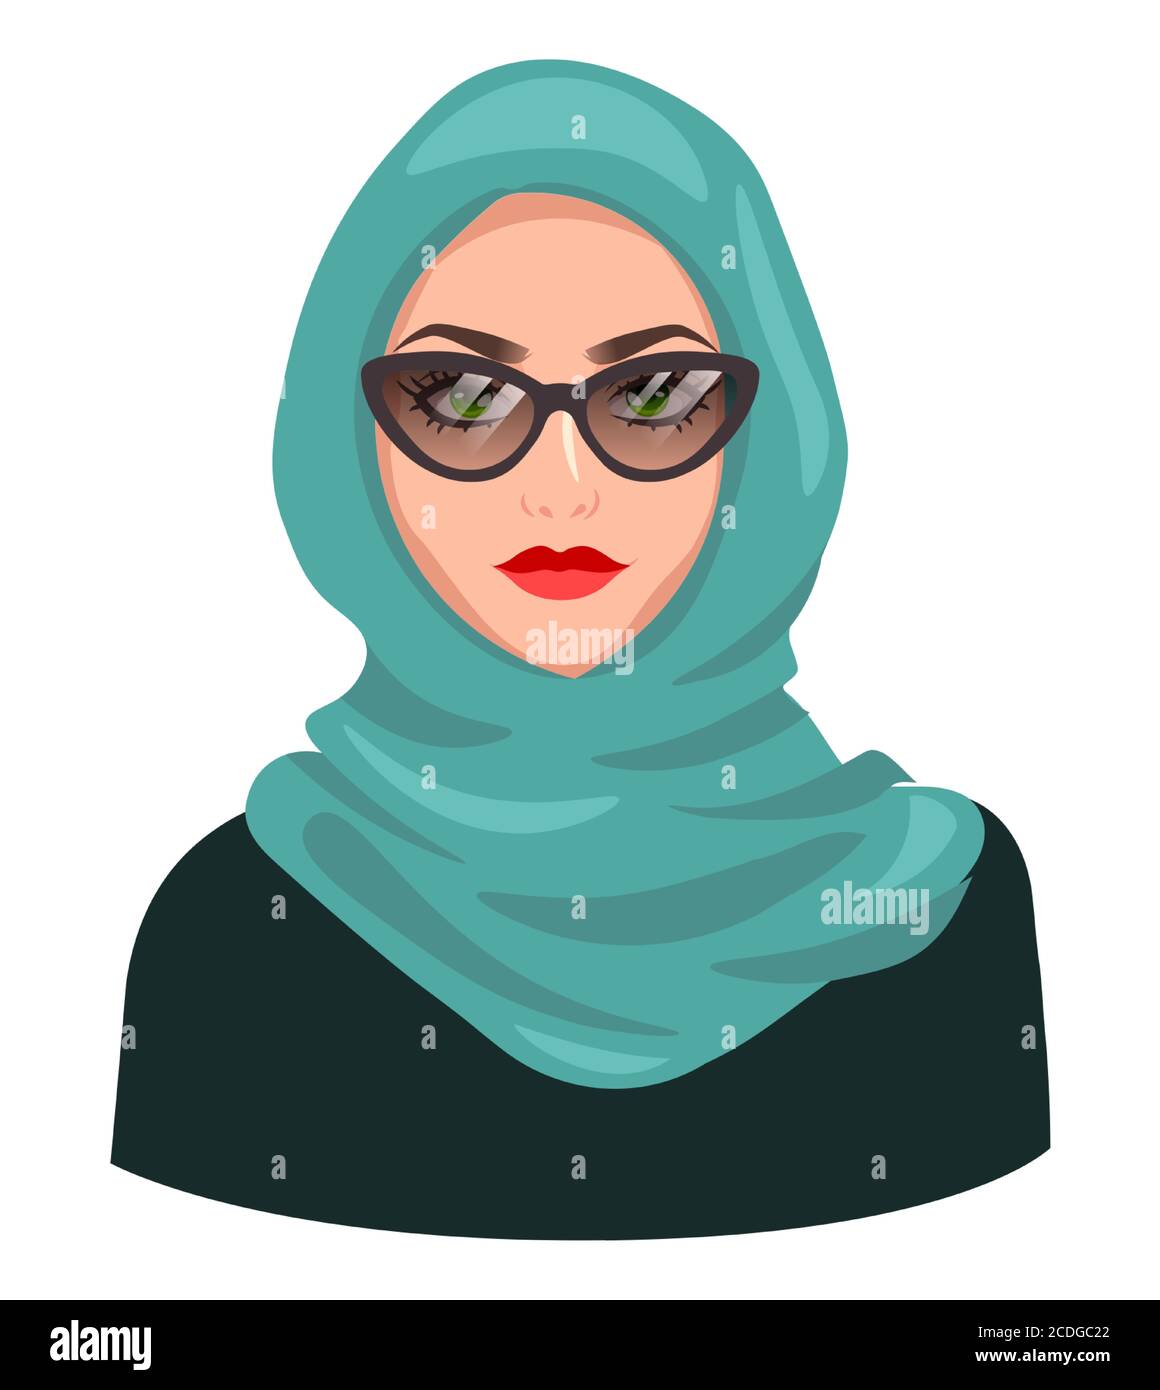 Avatar donna musulmana, isolato su bianco. Giovane ragazza araba che indossa hijab e occhiali da sole. Cartoon ritratto femminile, immagine vettoriale piatta Illustrazione Vettoriale